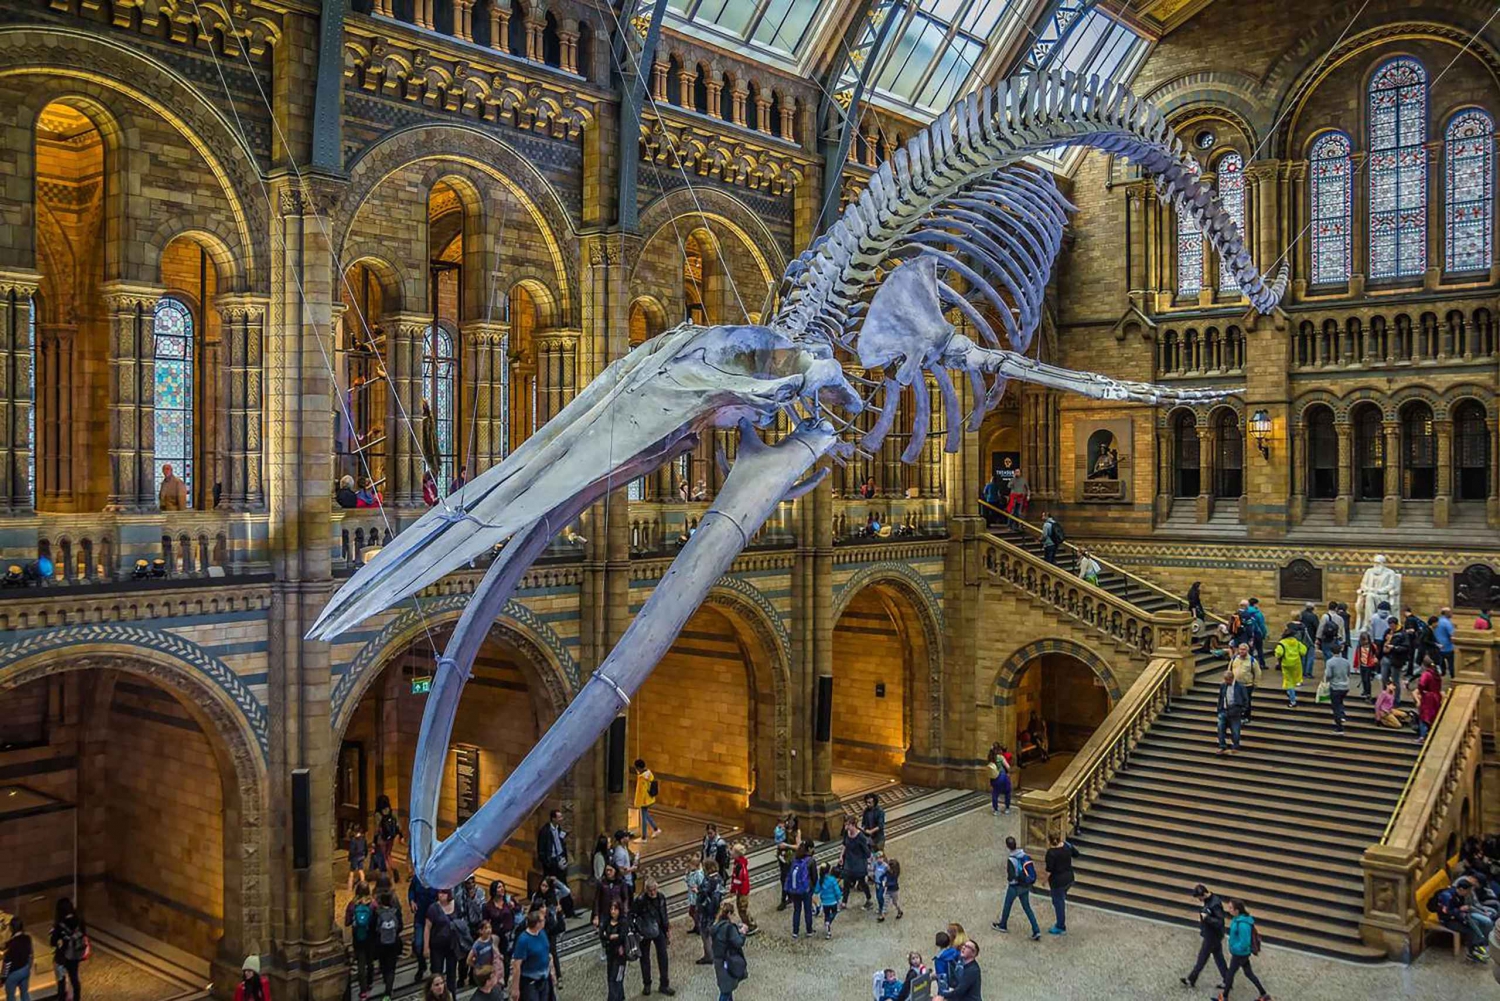 Explore as maravilhas naturais: Excursão ao Museu de Londres